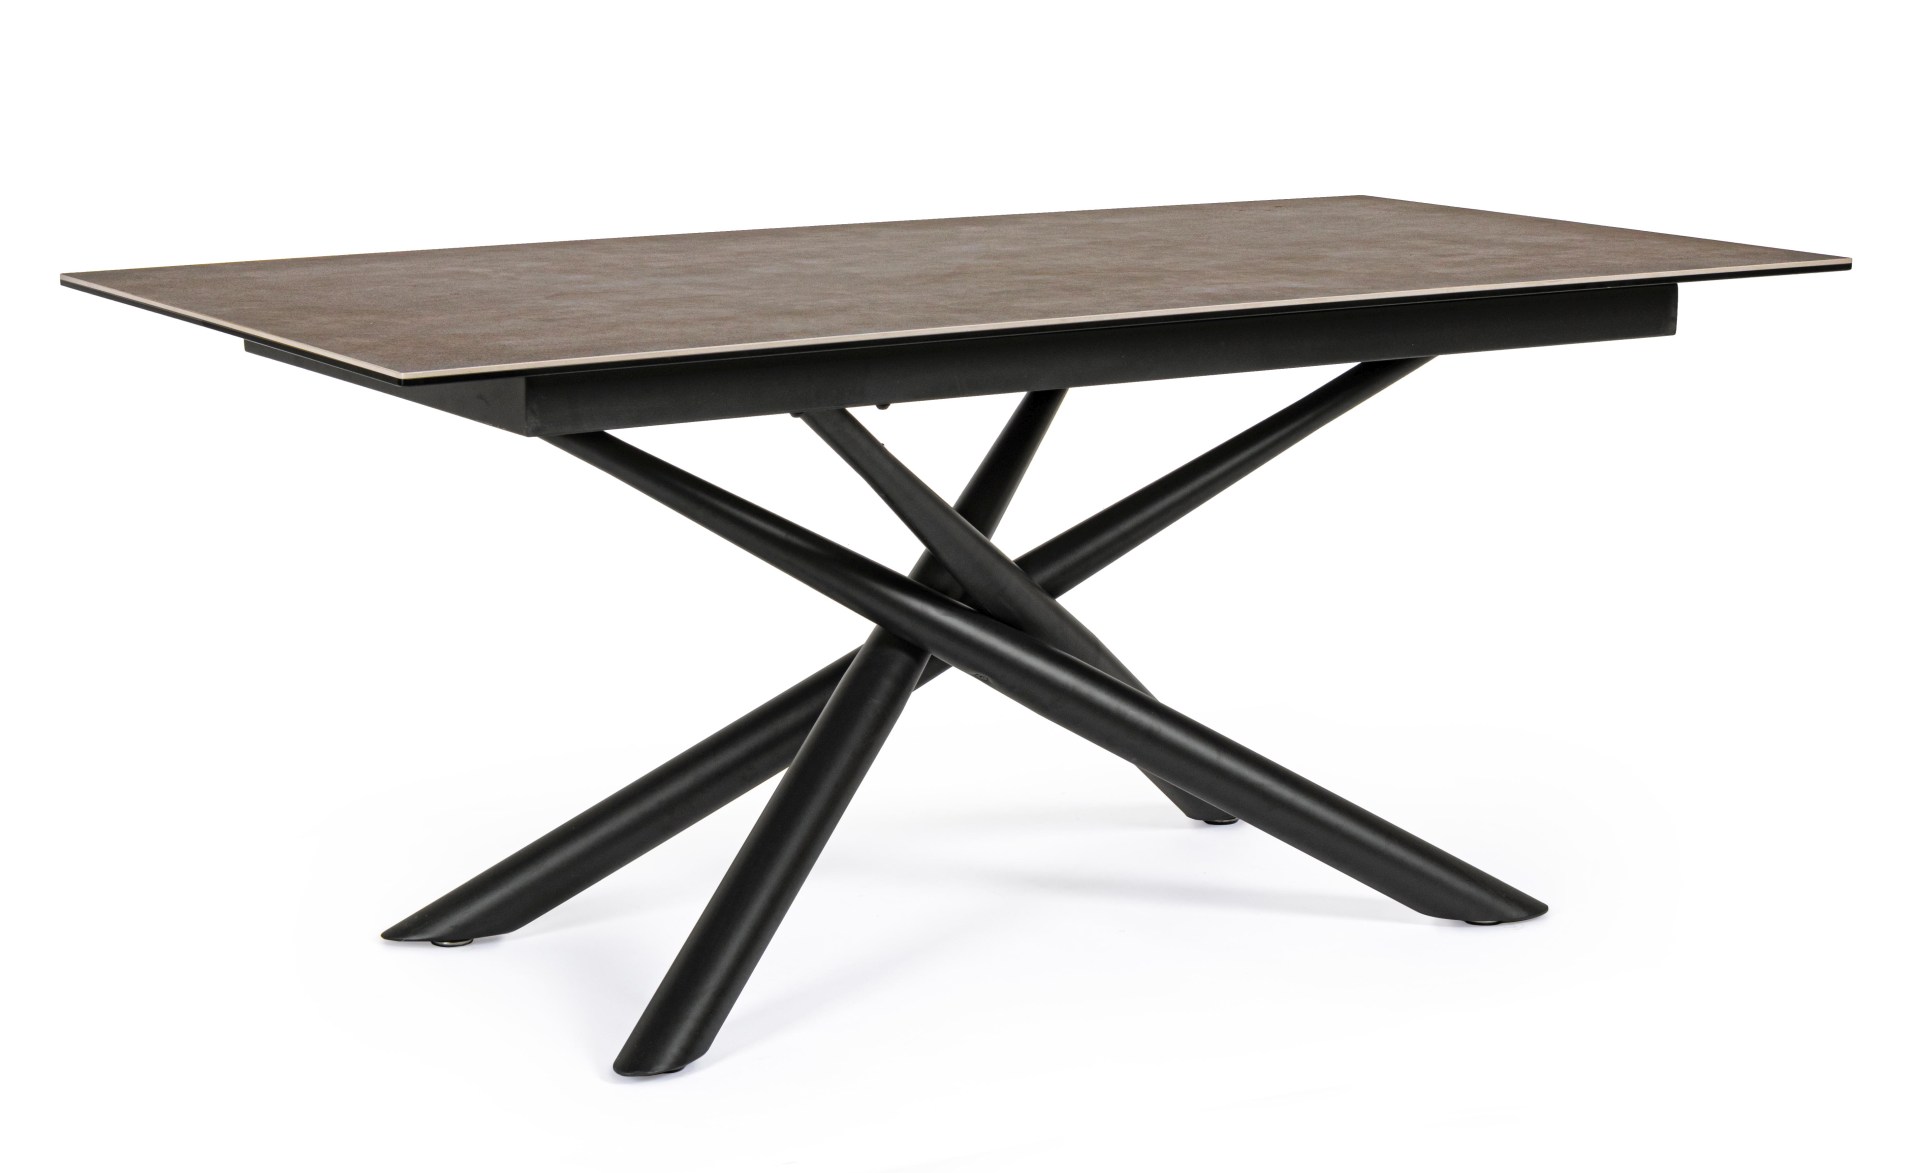 Der Esstisch Seyfert überzeugt mit seinem moderndem Design. Gefertigt wurde er aus Keramik, welches einen braunen Farbton besitzt. Das Gestell des Tisches ist aus Metall und ist in eine schwarze Farbe. Der Tisch besitzt eine Breite von 180 cm.